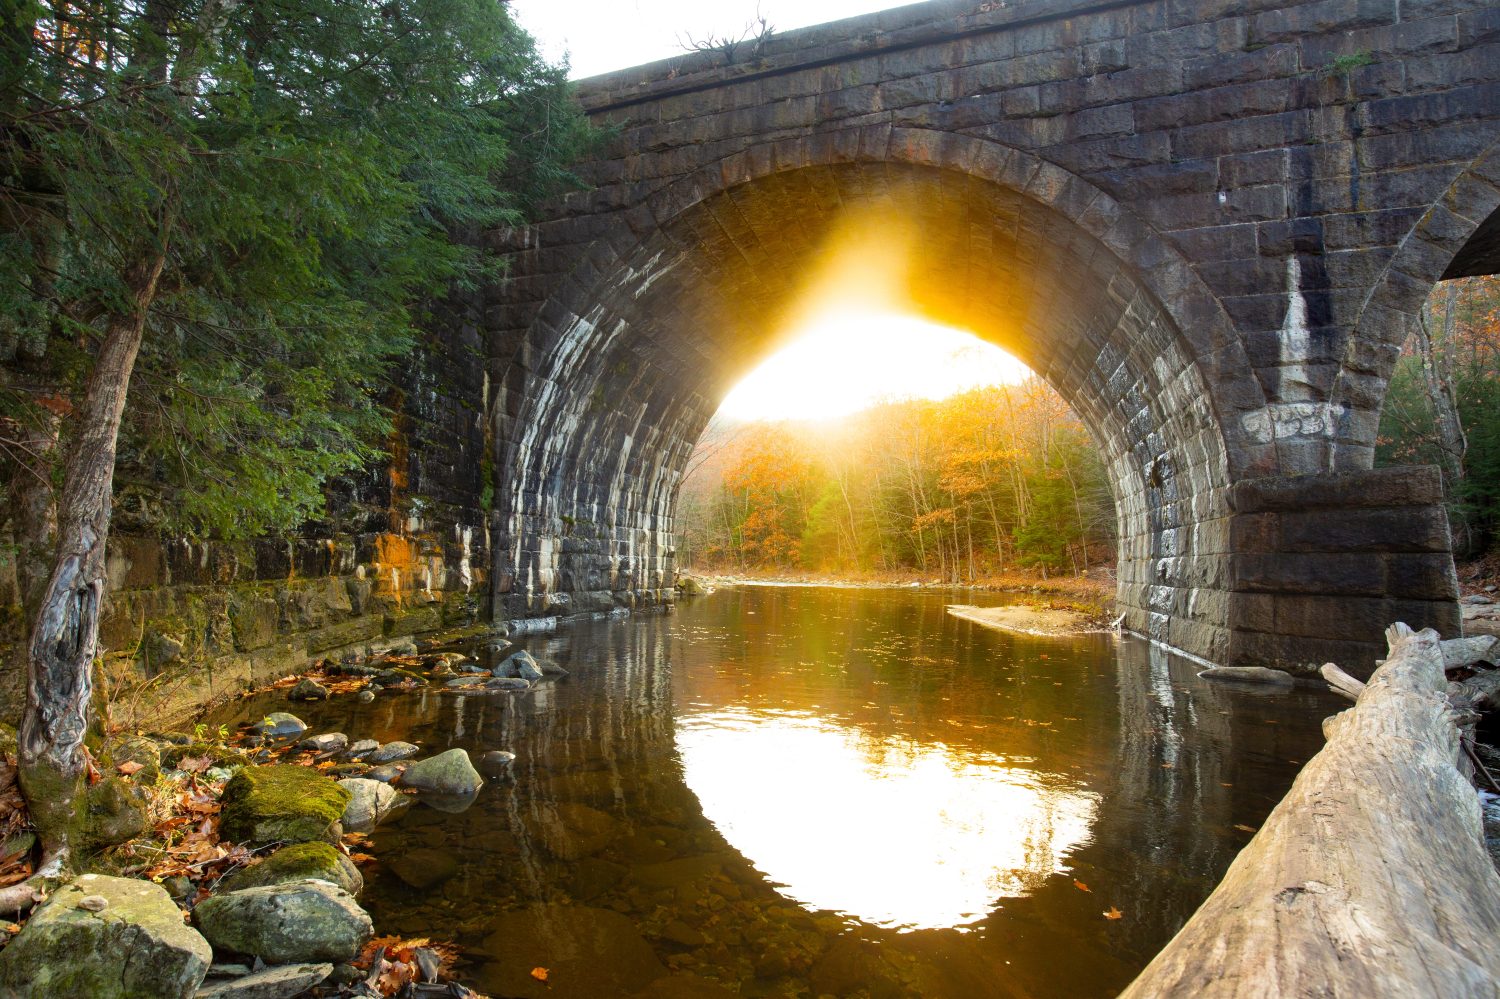 Ponte ferroviario ad arco in pietra sul ramo ovest del fiume Westfield, lungo il Keystone Arch Bridges Trail vicino a Chester, Massachusetts, nel tardo autunno.